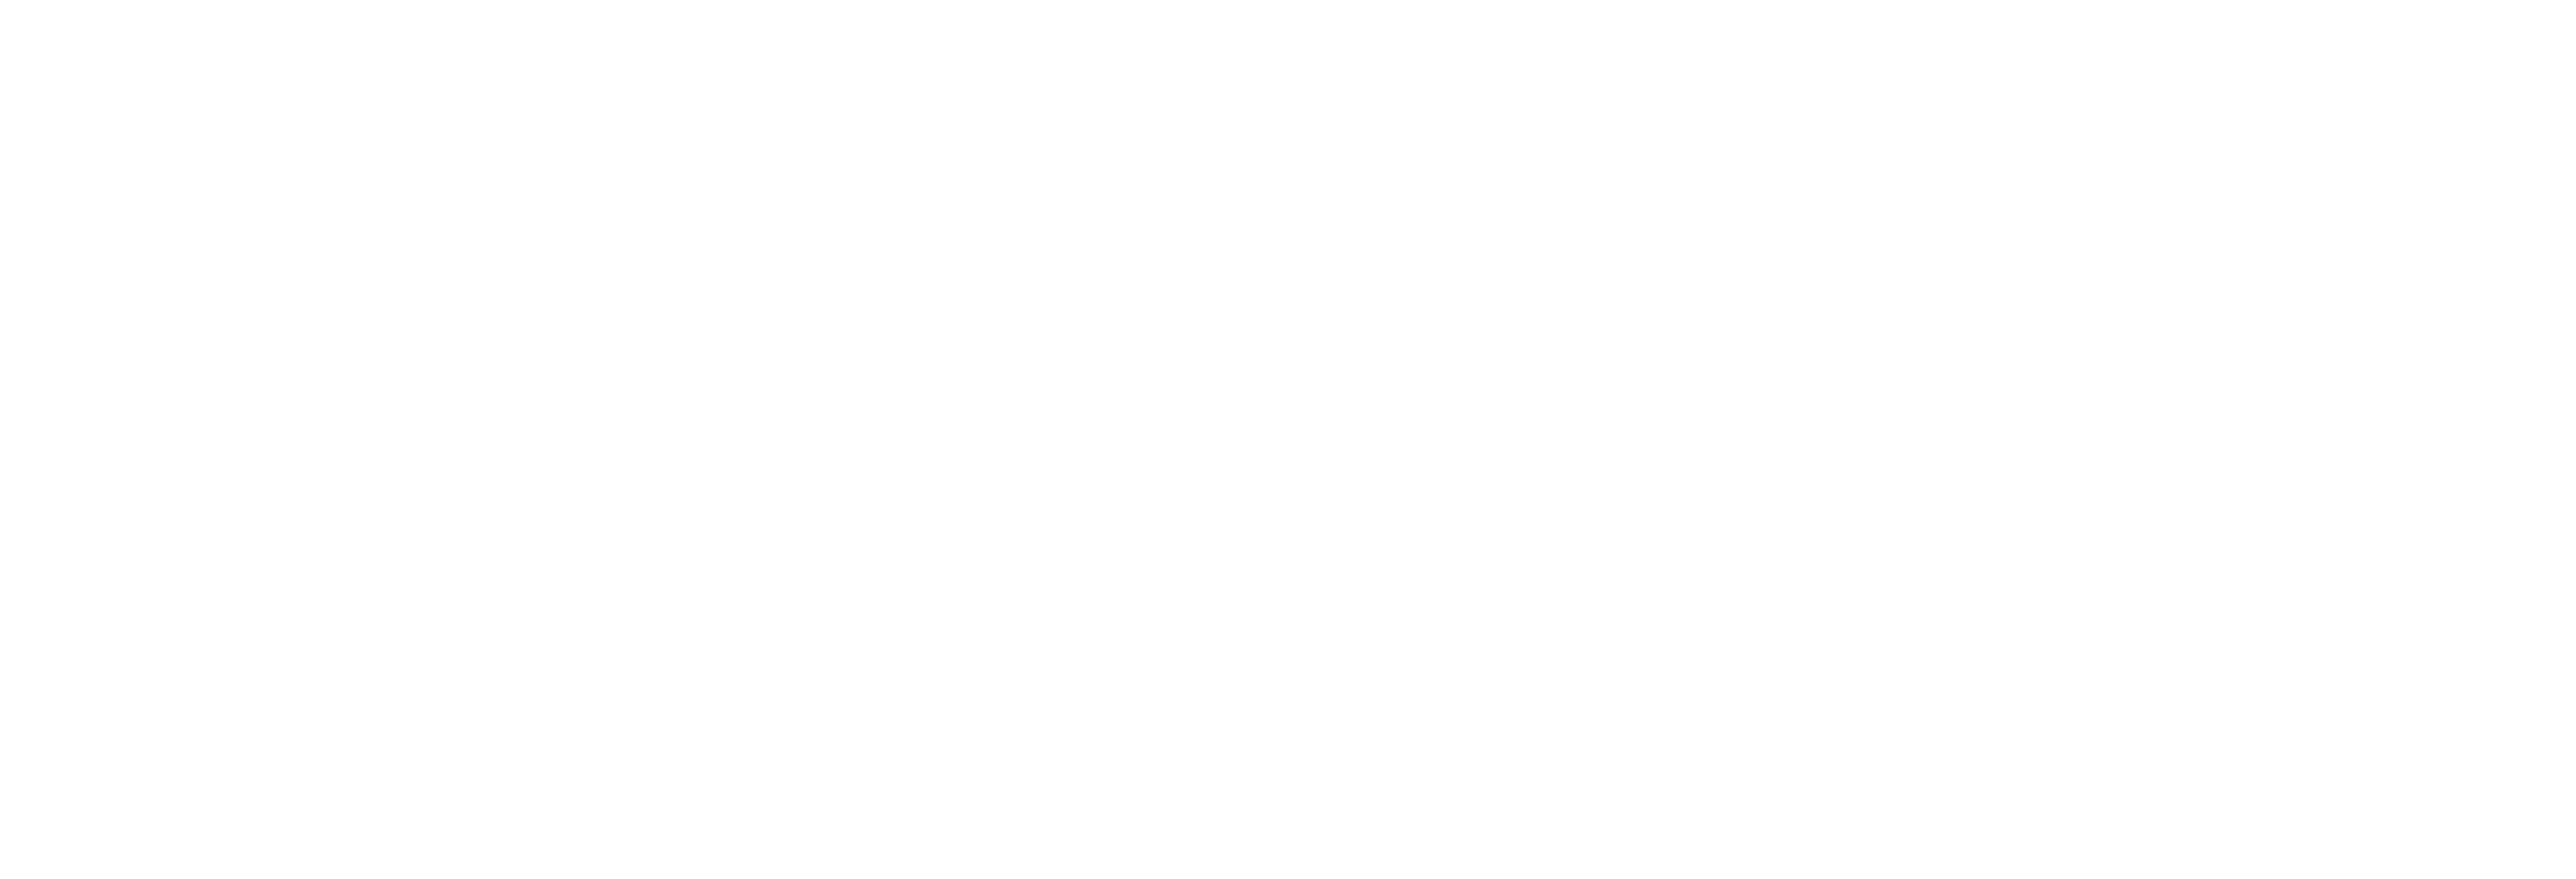 Mercuri Logo